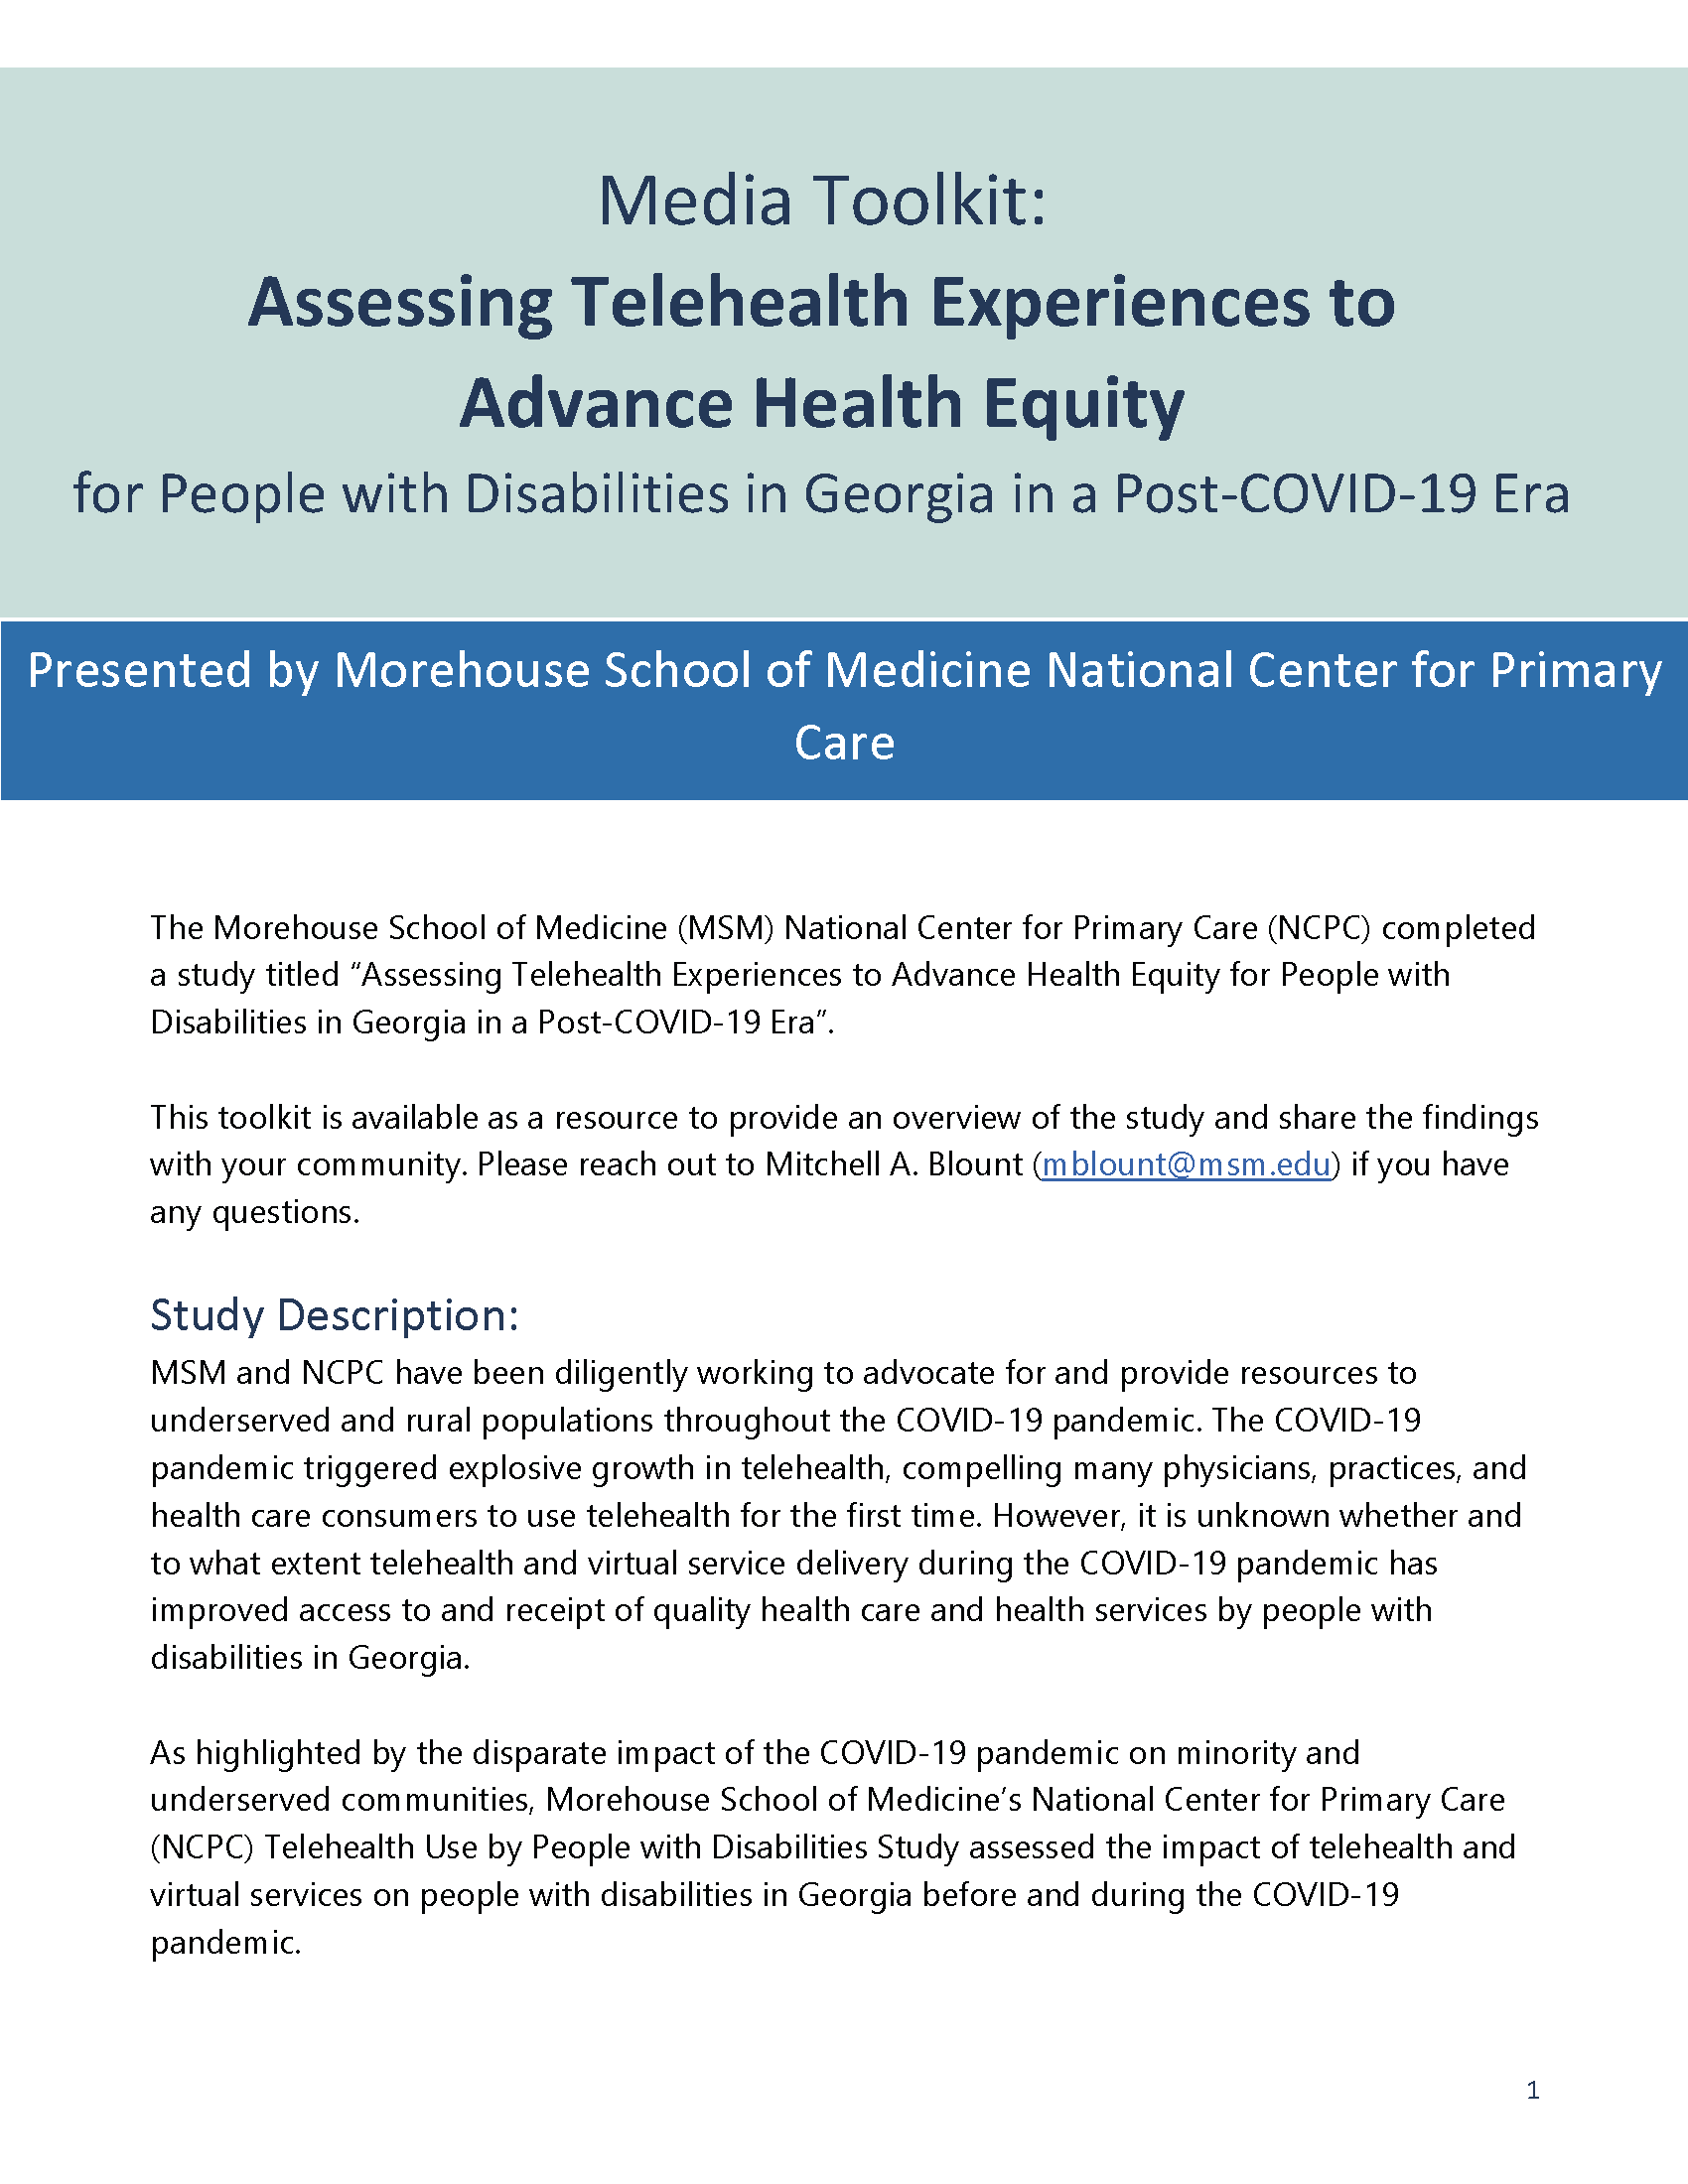 Telehealth Disability Study Media Toolkit